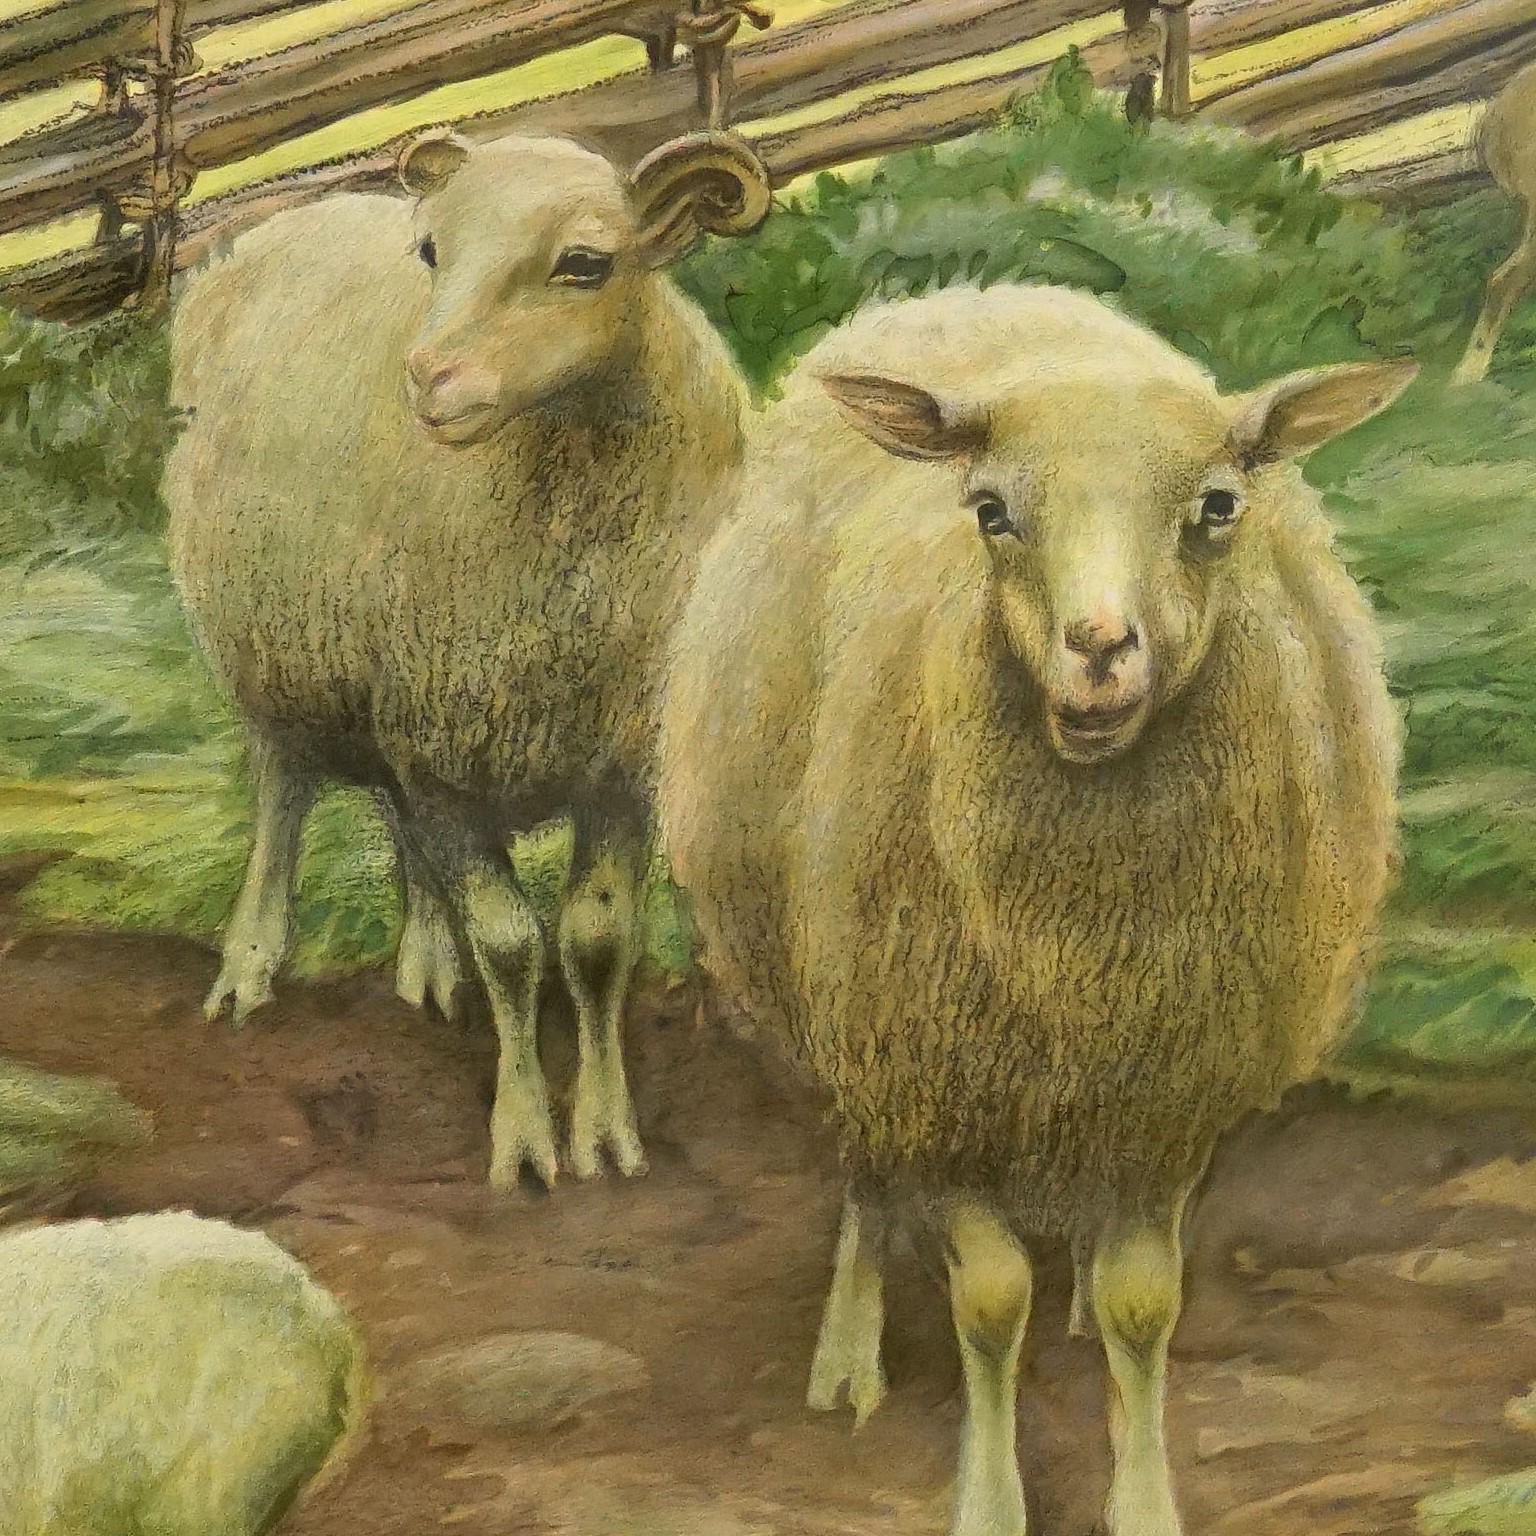 Die ausziehbare Wandtafel im Vintage-Stil zeigt Schafe auf dem Lande. Farbenfroher Druck auf mit Leinwand verstärktem Papier.
Abmessungen:
Breite 97 cm (38,19 Zoll)
Höhe 73 cm (28,74 Zoll)

Die angegebenen Maße beziehen sich nur auf die Leinwand und